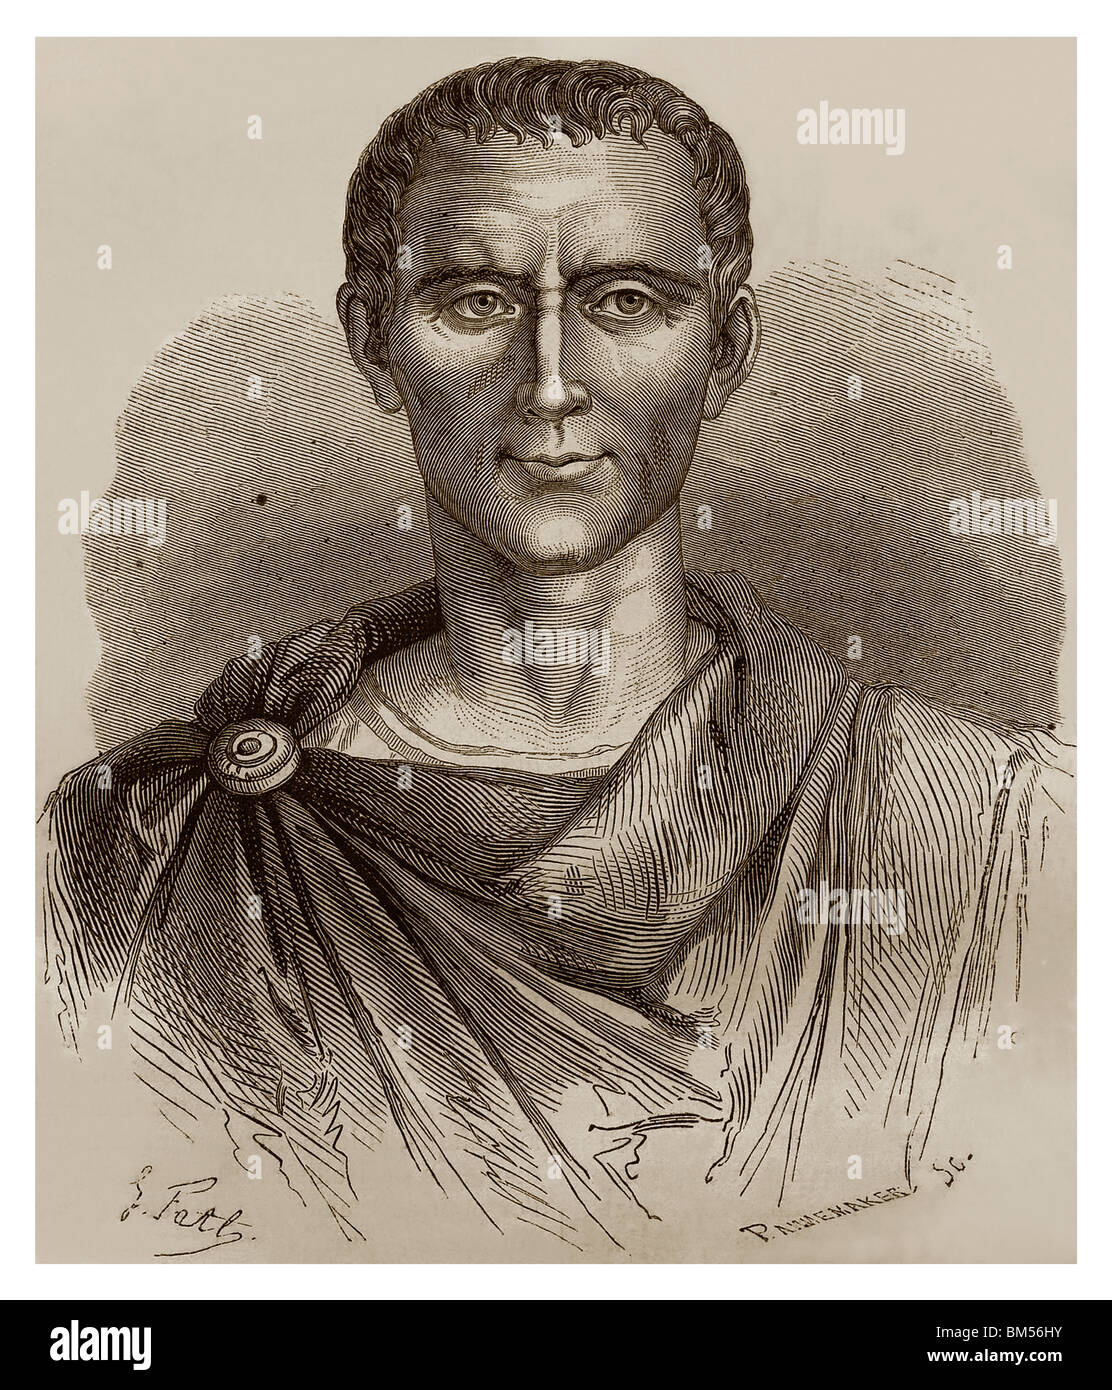 Gaius Julius Caesar (près de 100 avant J.-C. - 44 av. J.-C.) : général romain, écrivain et dirigeant politique qui a conquis la Gaule. Banque D'Images